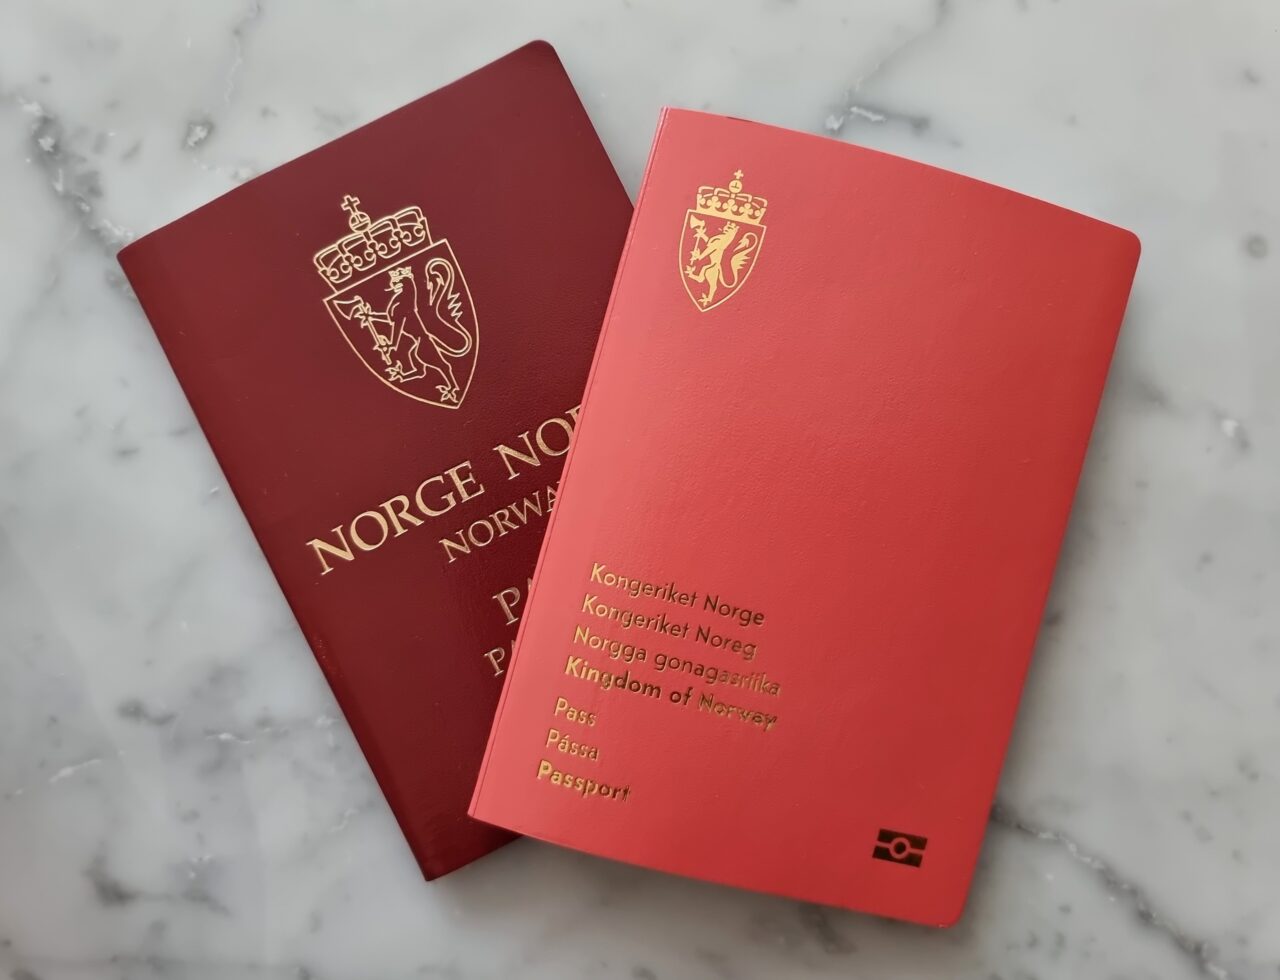 Bilde av et gammelt og et nytt norsk pass